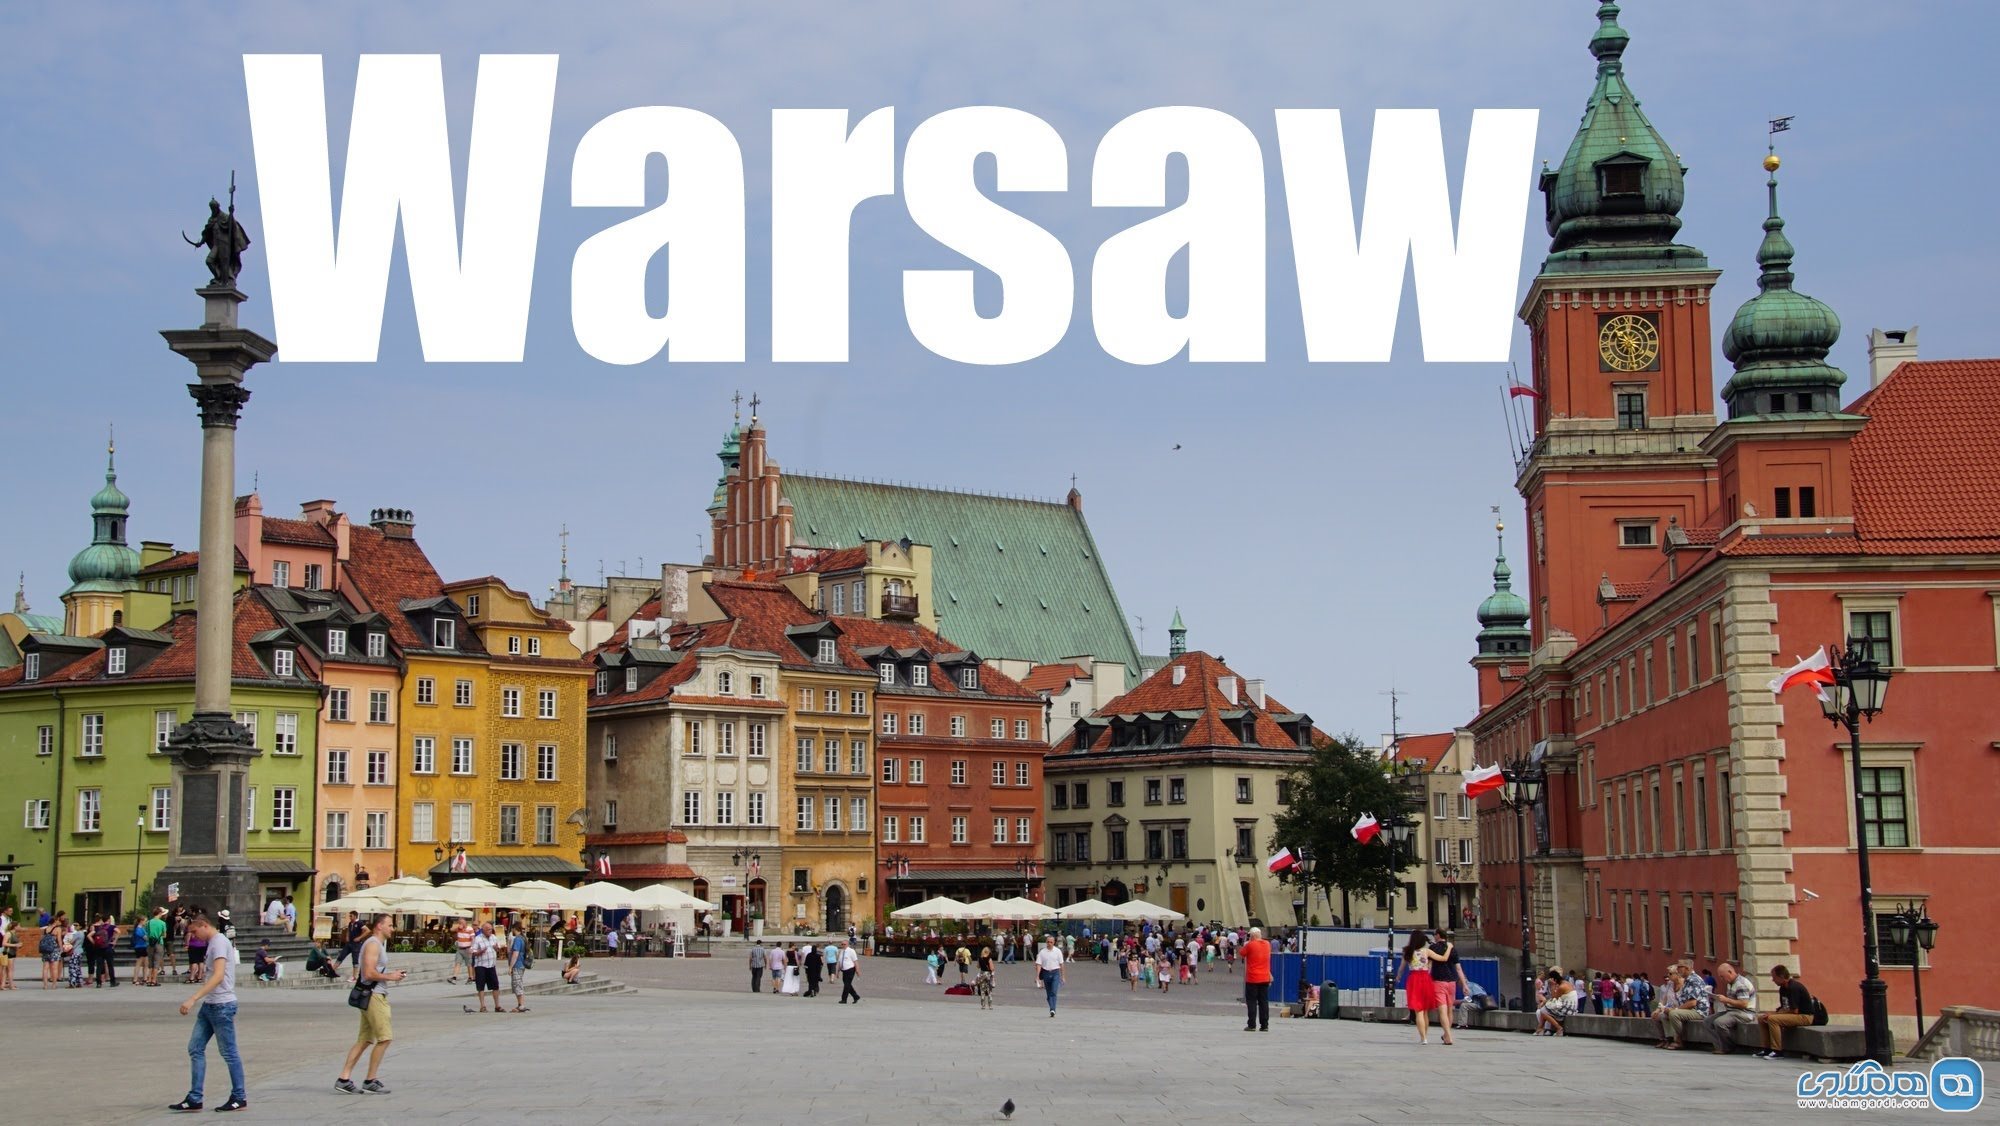 اسرار پنهان ورشو ، پایتخت لهستان و پاریس شرق اروپا